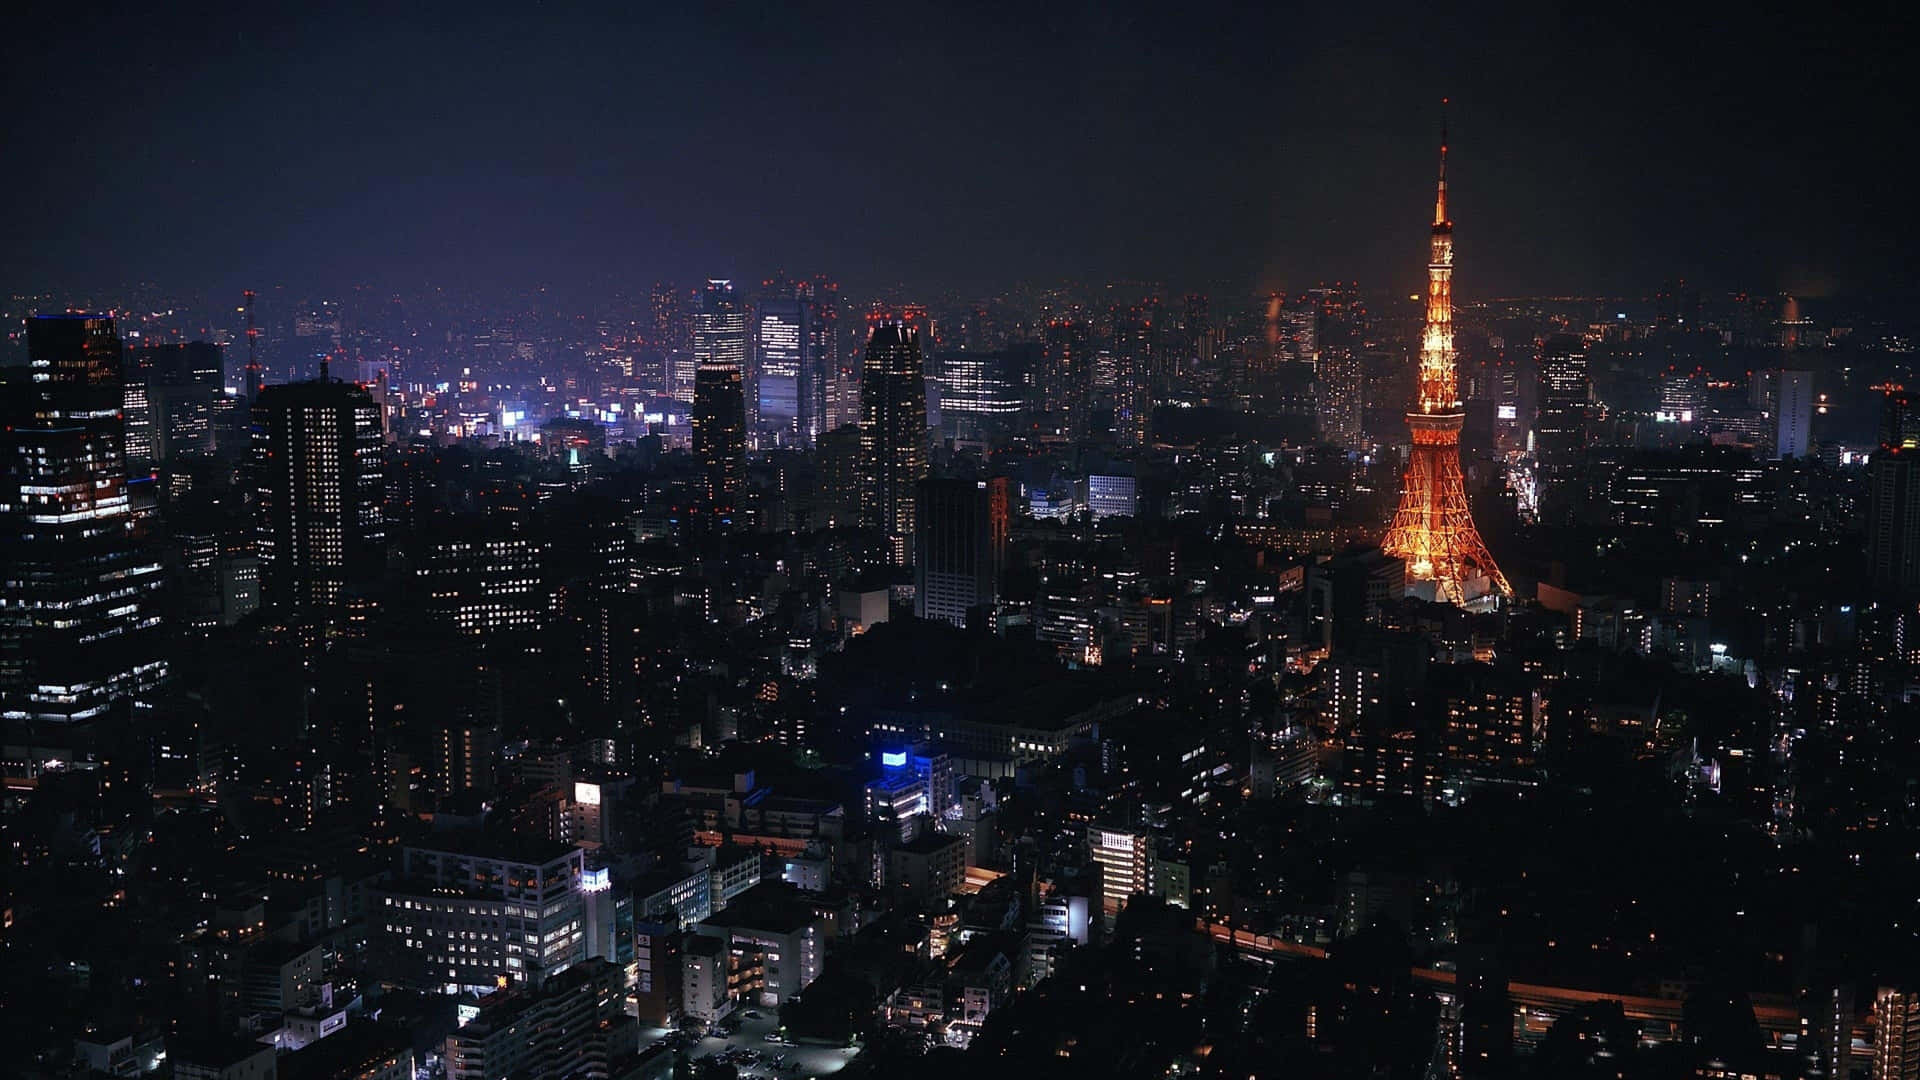 Impresionantepaisaje Oscuro De La Ciudad En 4k Fondo de pantalla